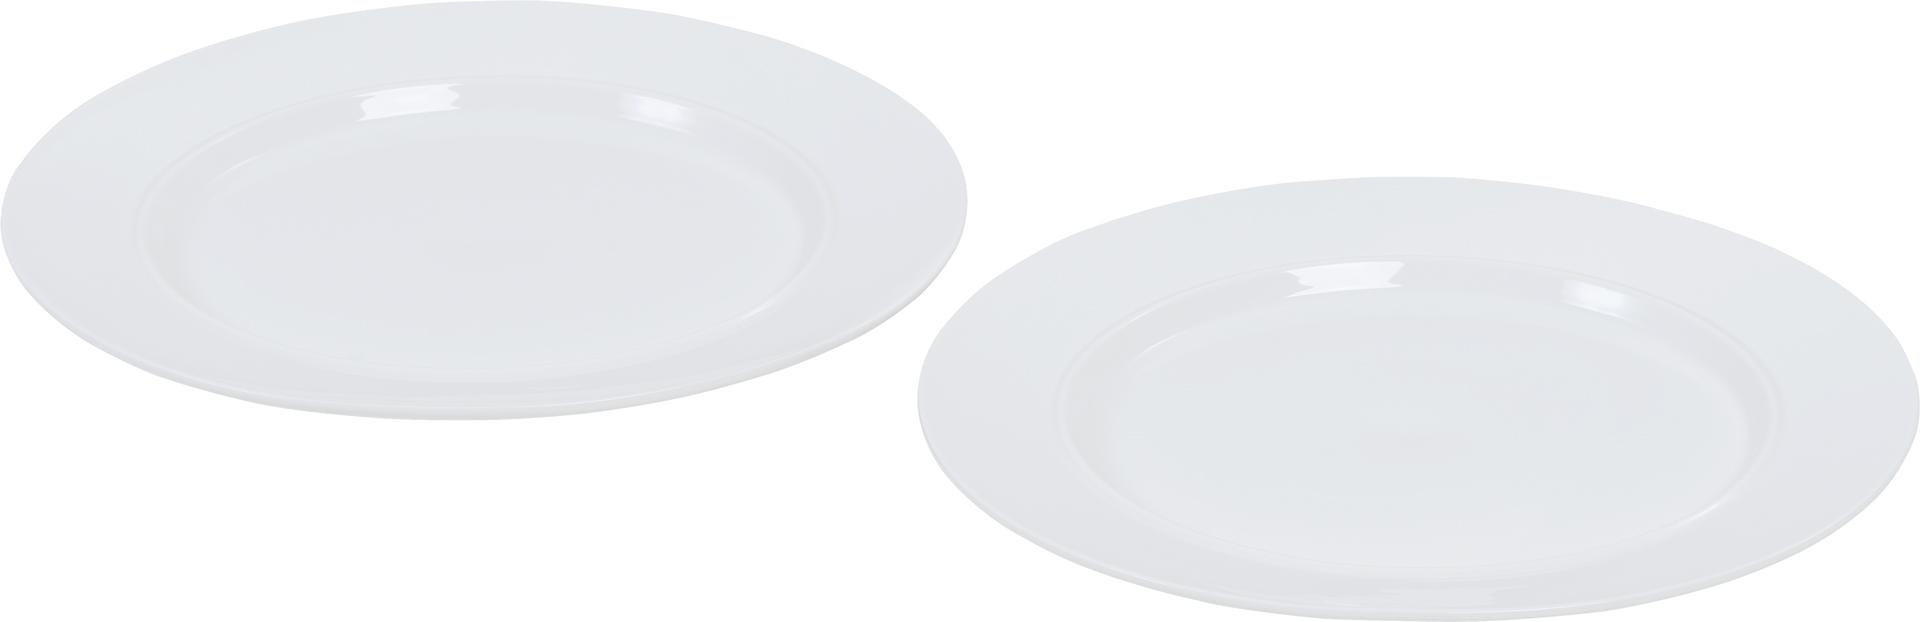 Small plate Tassel - set of 2pcs.